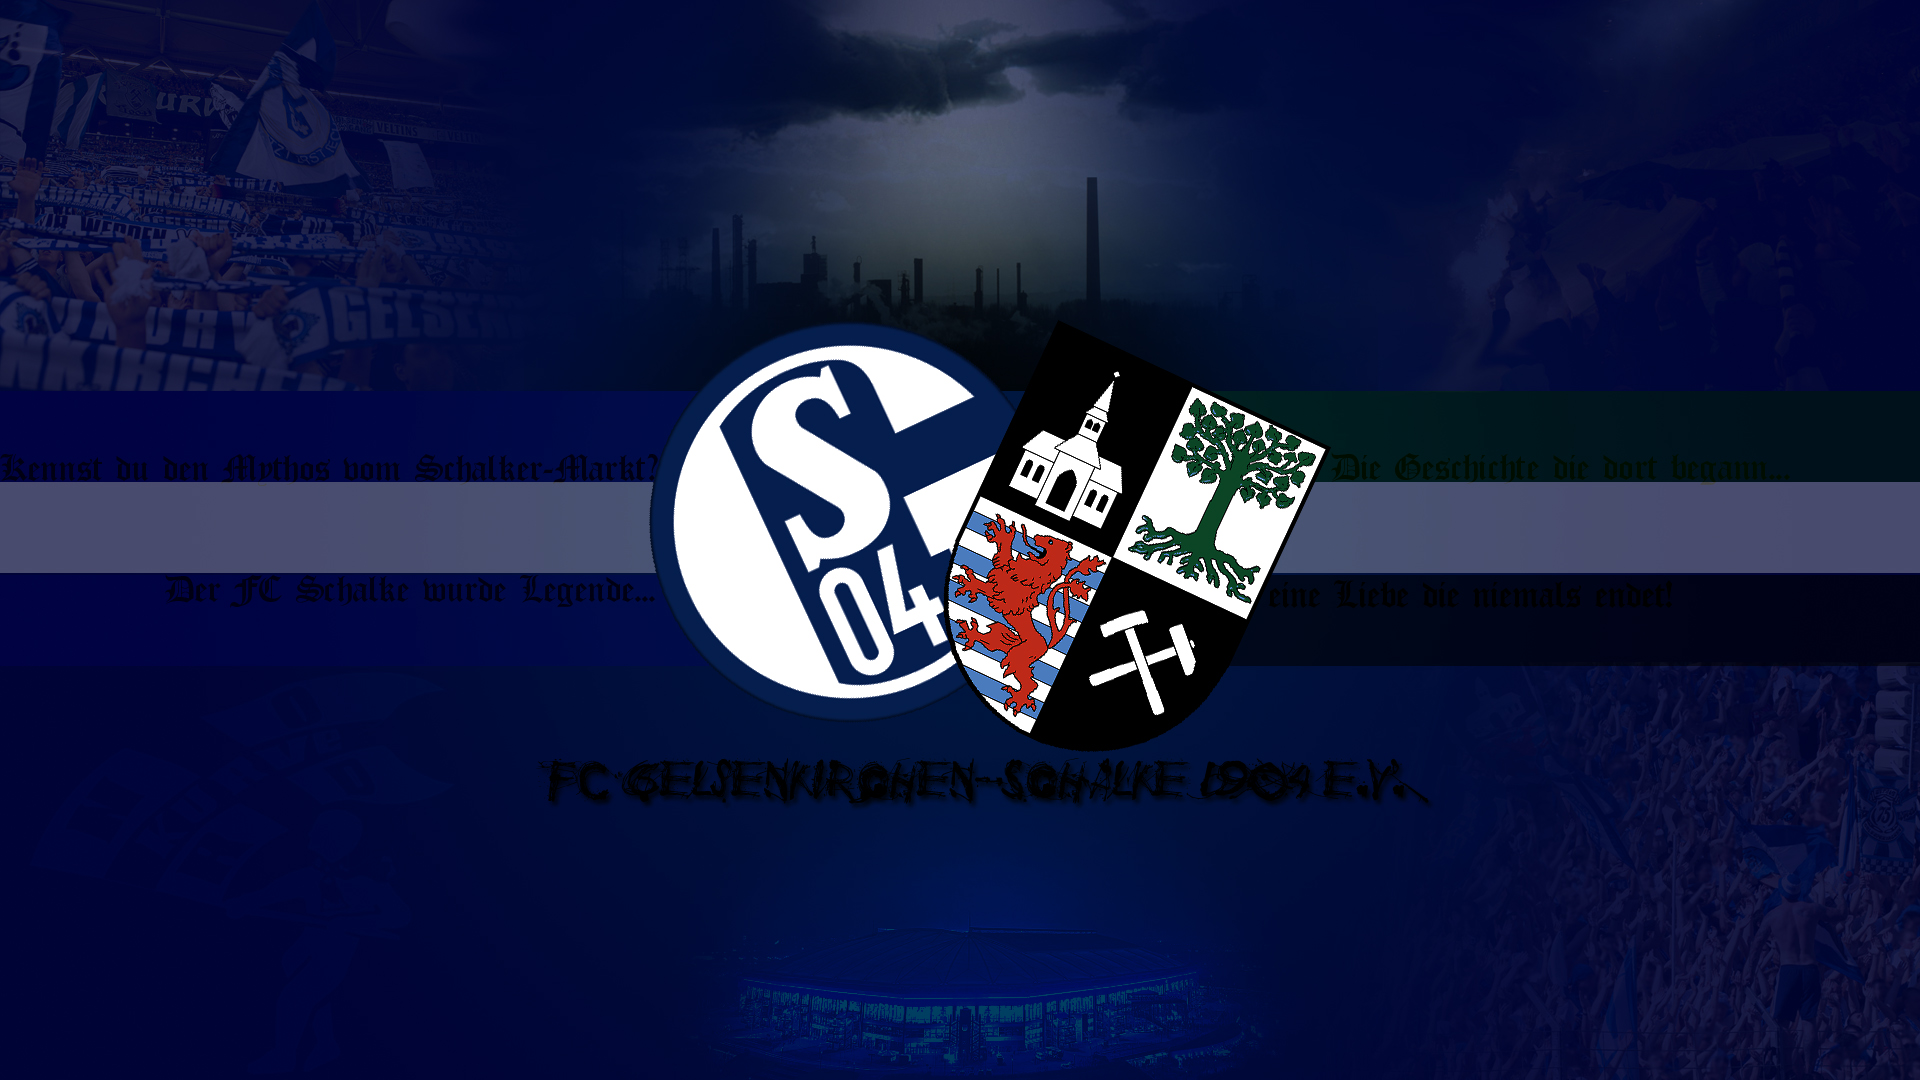 Fußballclub Gelsenkirchen-schalke 04 Hd Wallpaper - Schalke 04 Wallpaper 2014 , HD Wallpaper & Backgrounds